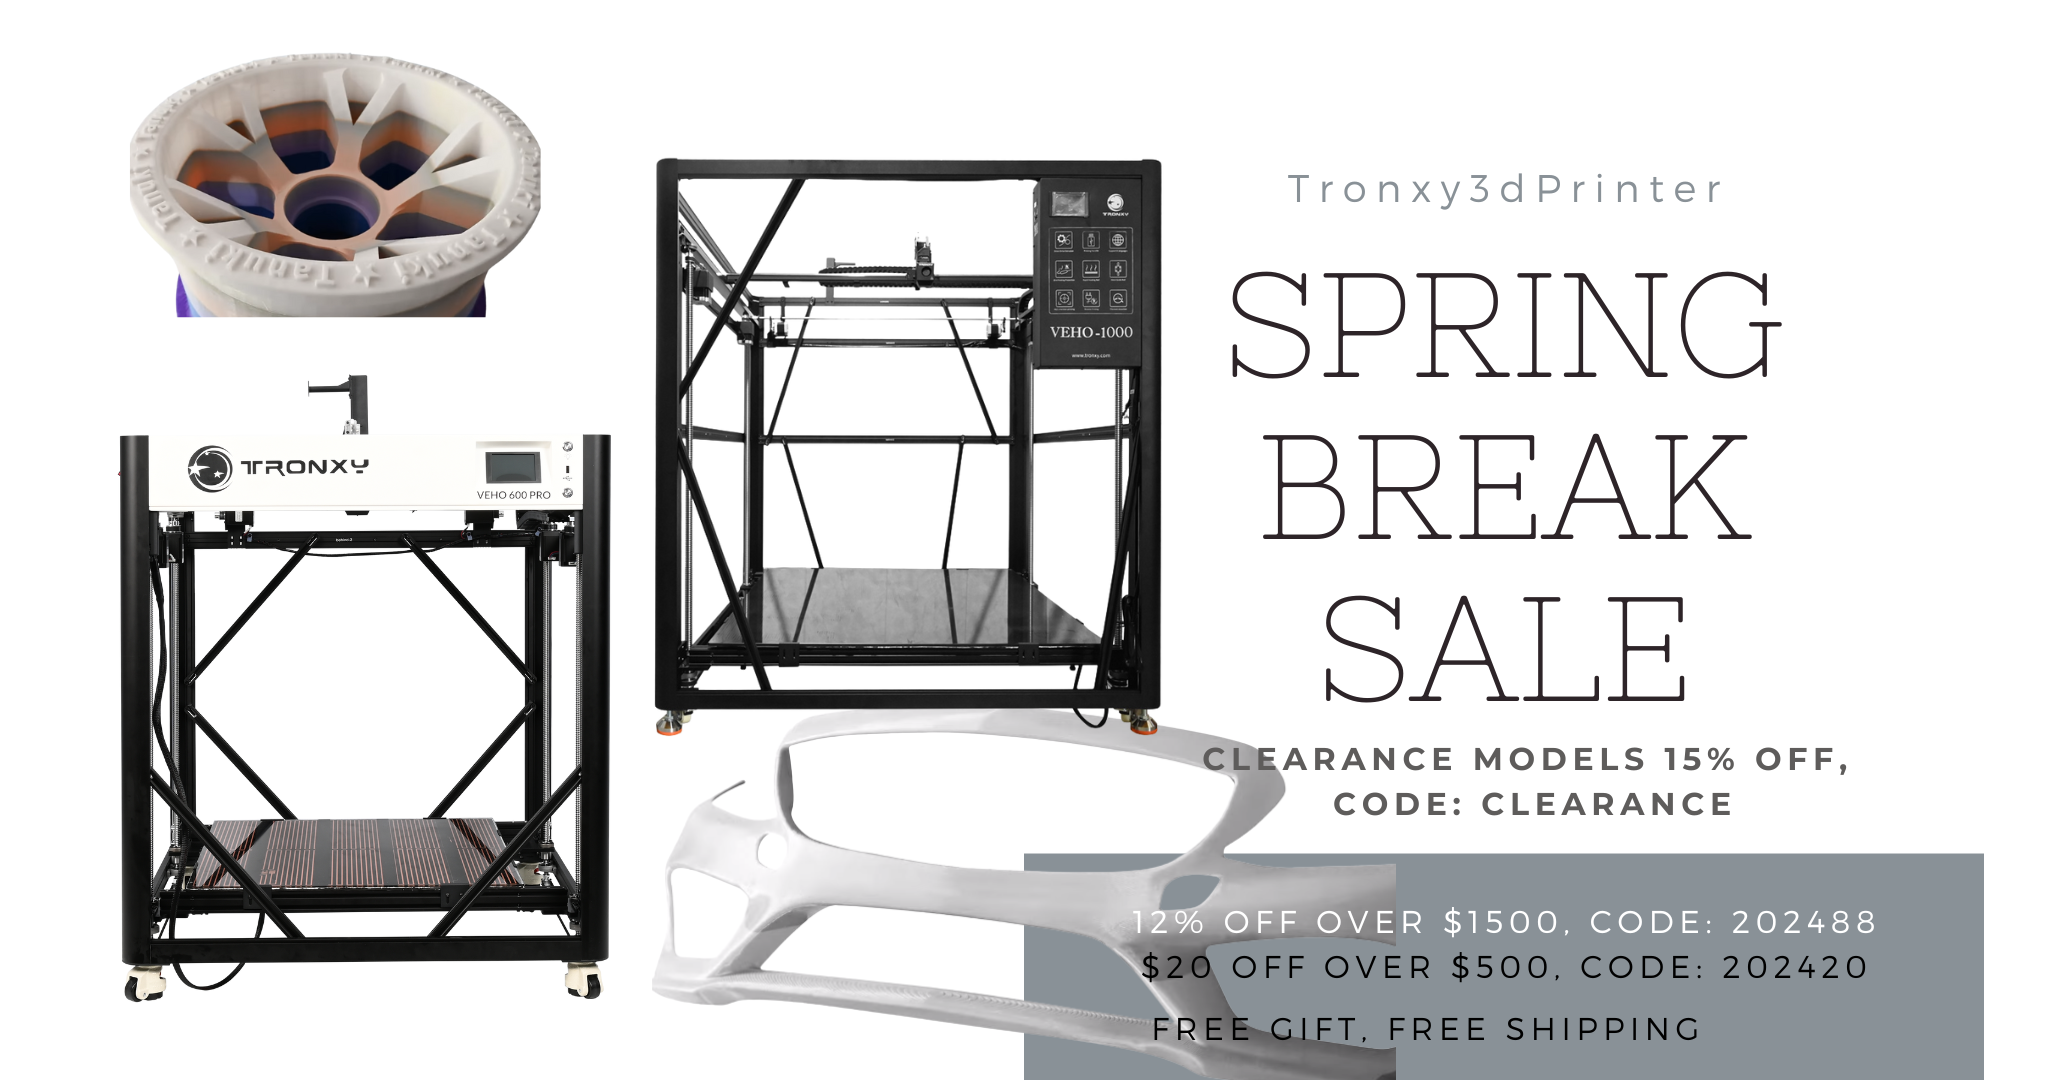 tronxy 3d printer spring break sale